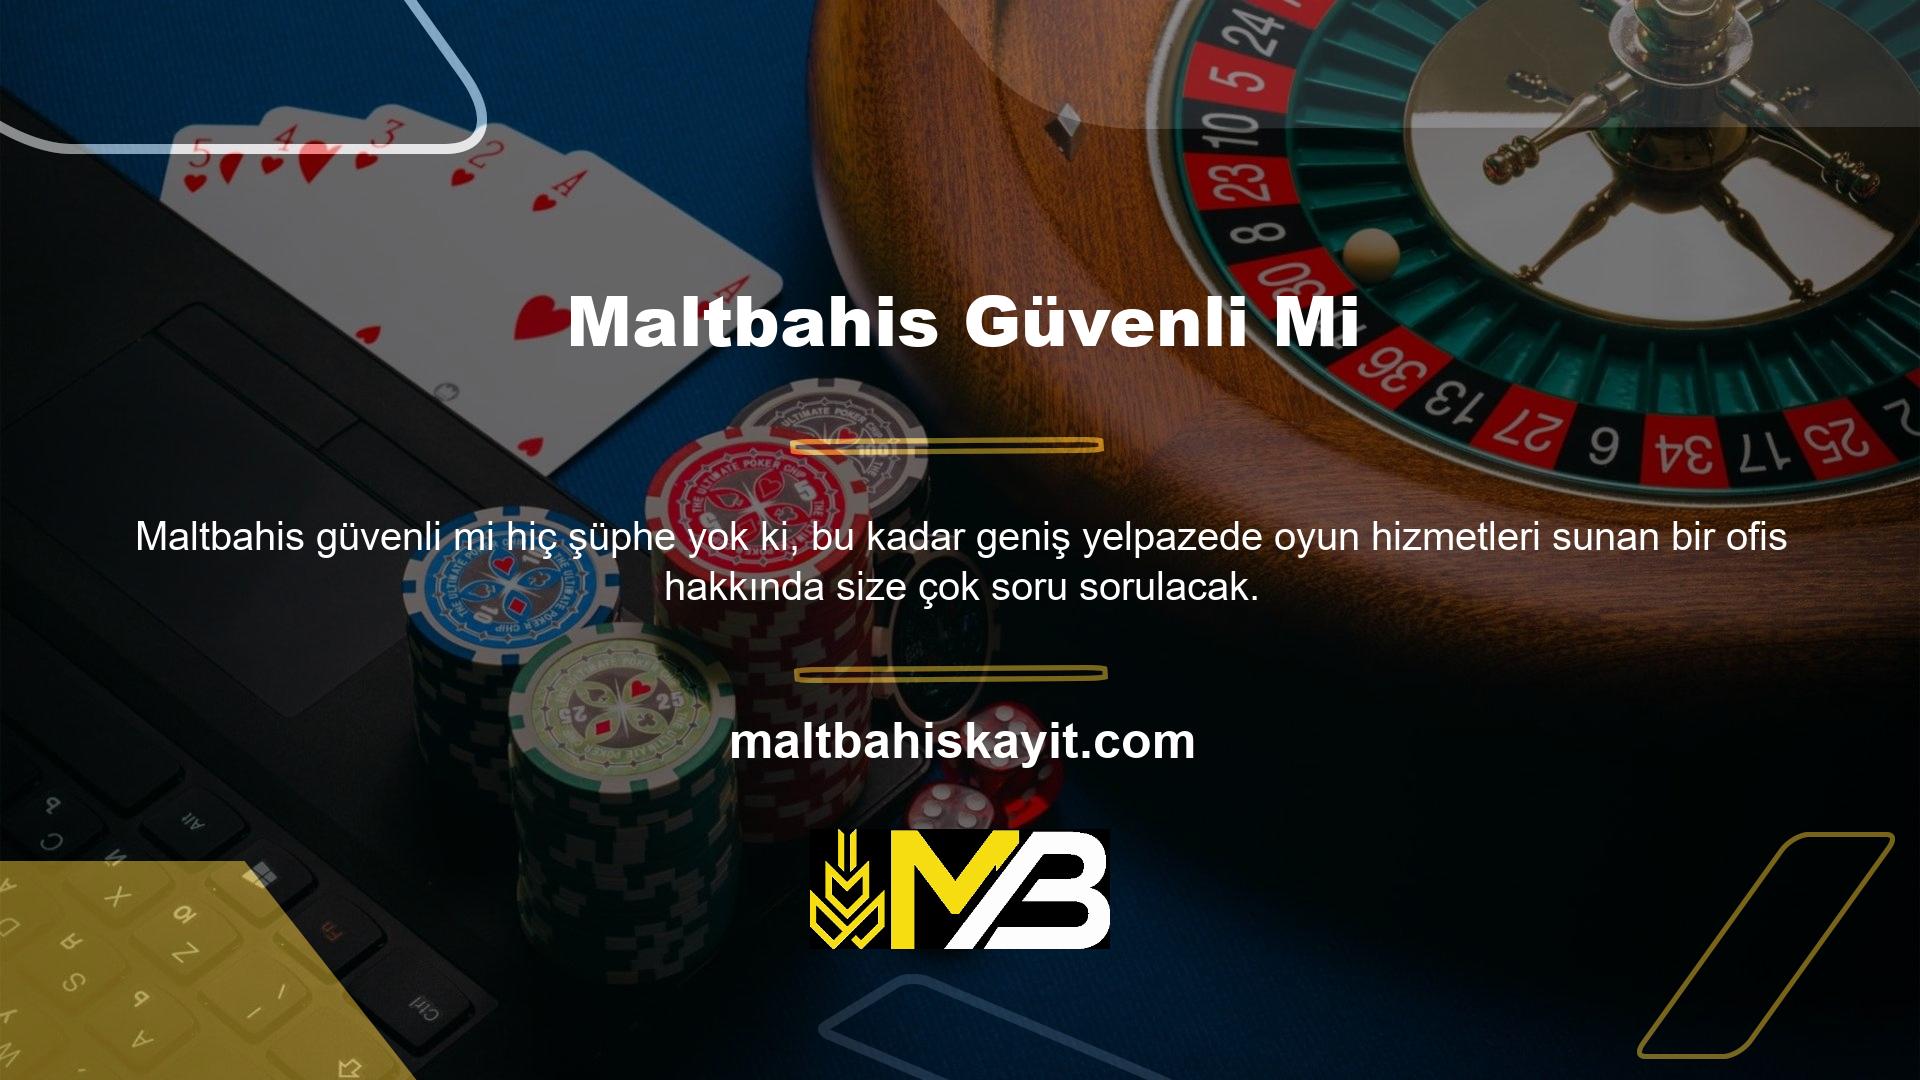 Maltbahis ülkemizde tanınmış bir casino sitesi olup, güvenilir bir casino şirketi olduğunu kanıtlamış, yetkili marka olarak faaliyetlerine devam etmektedir